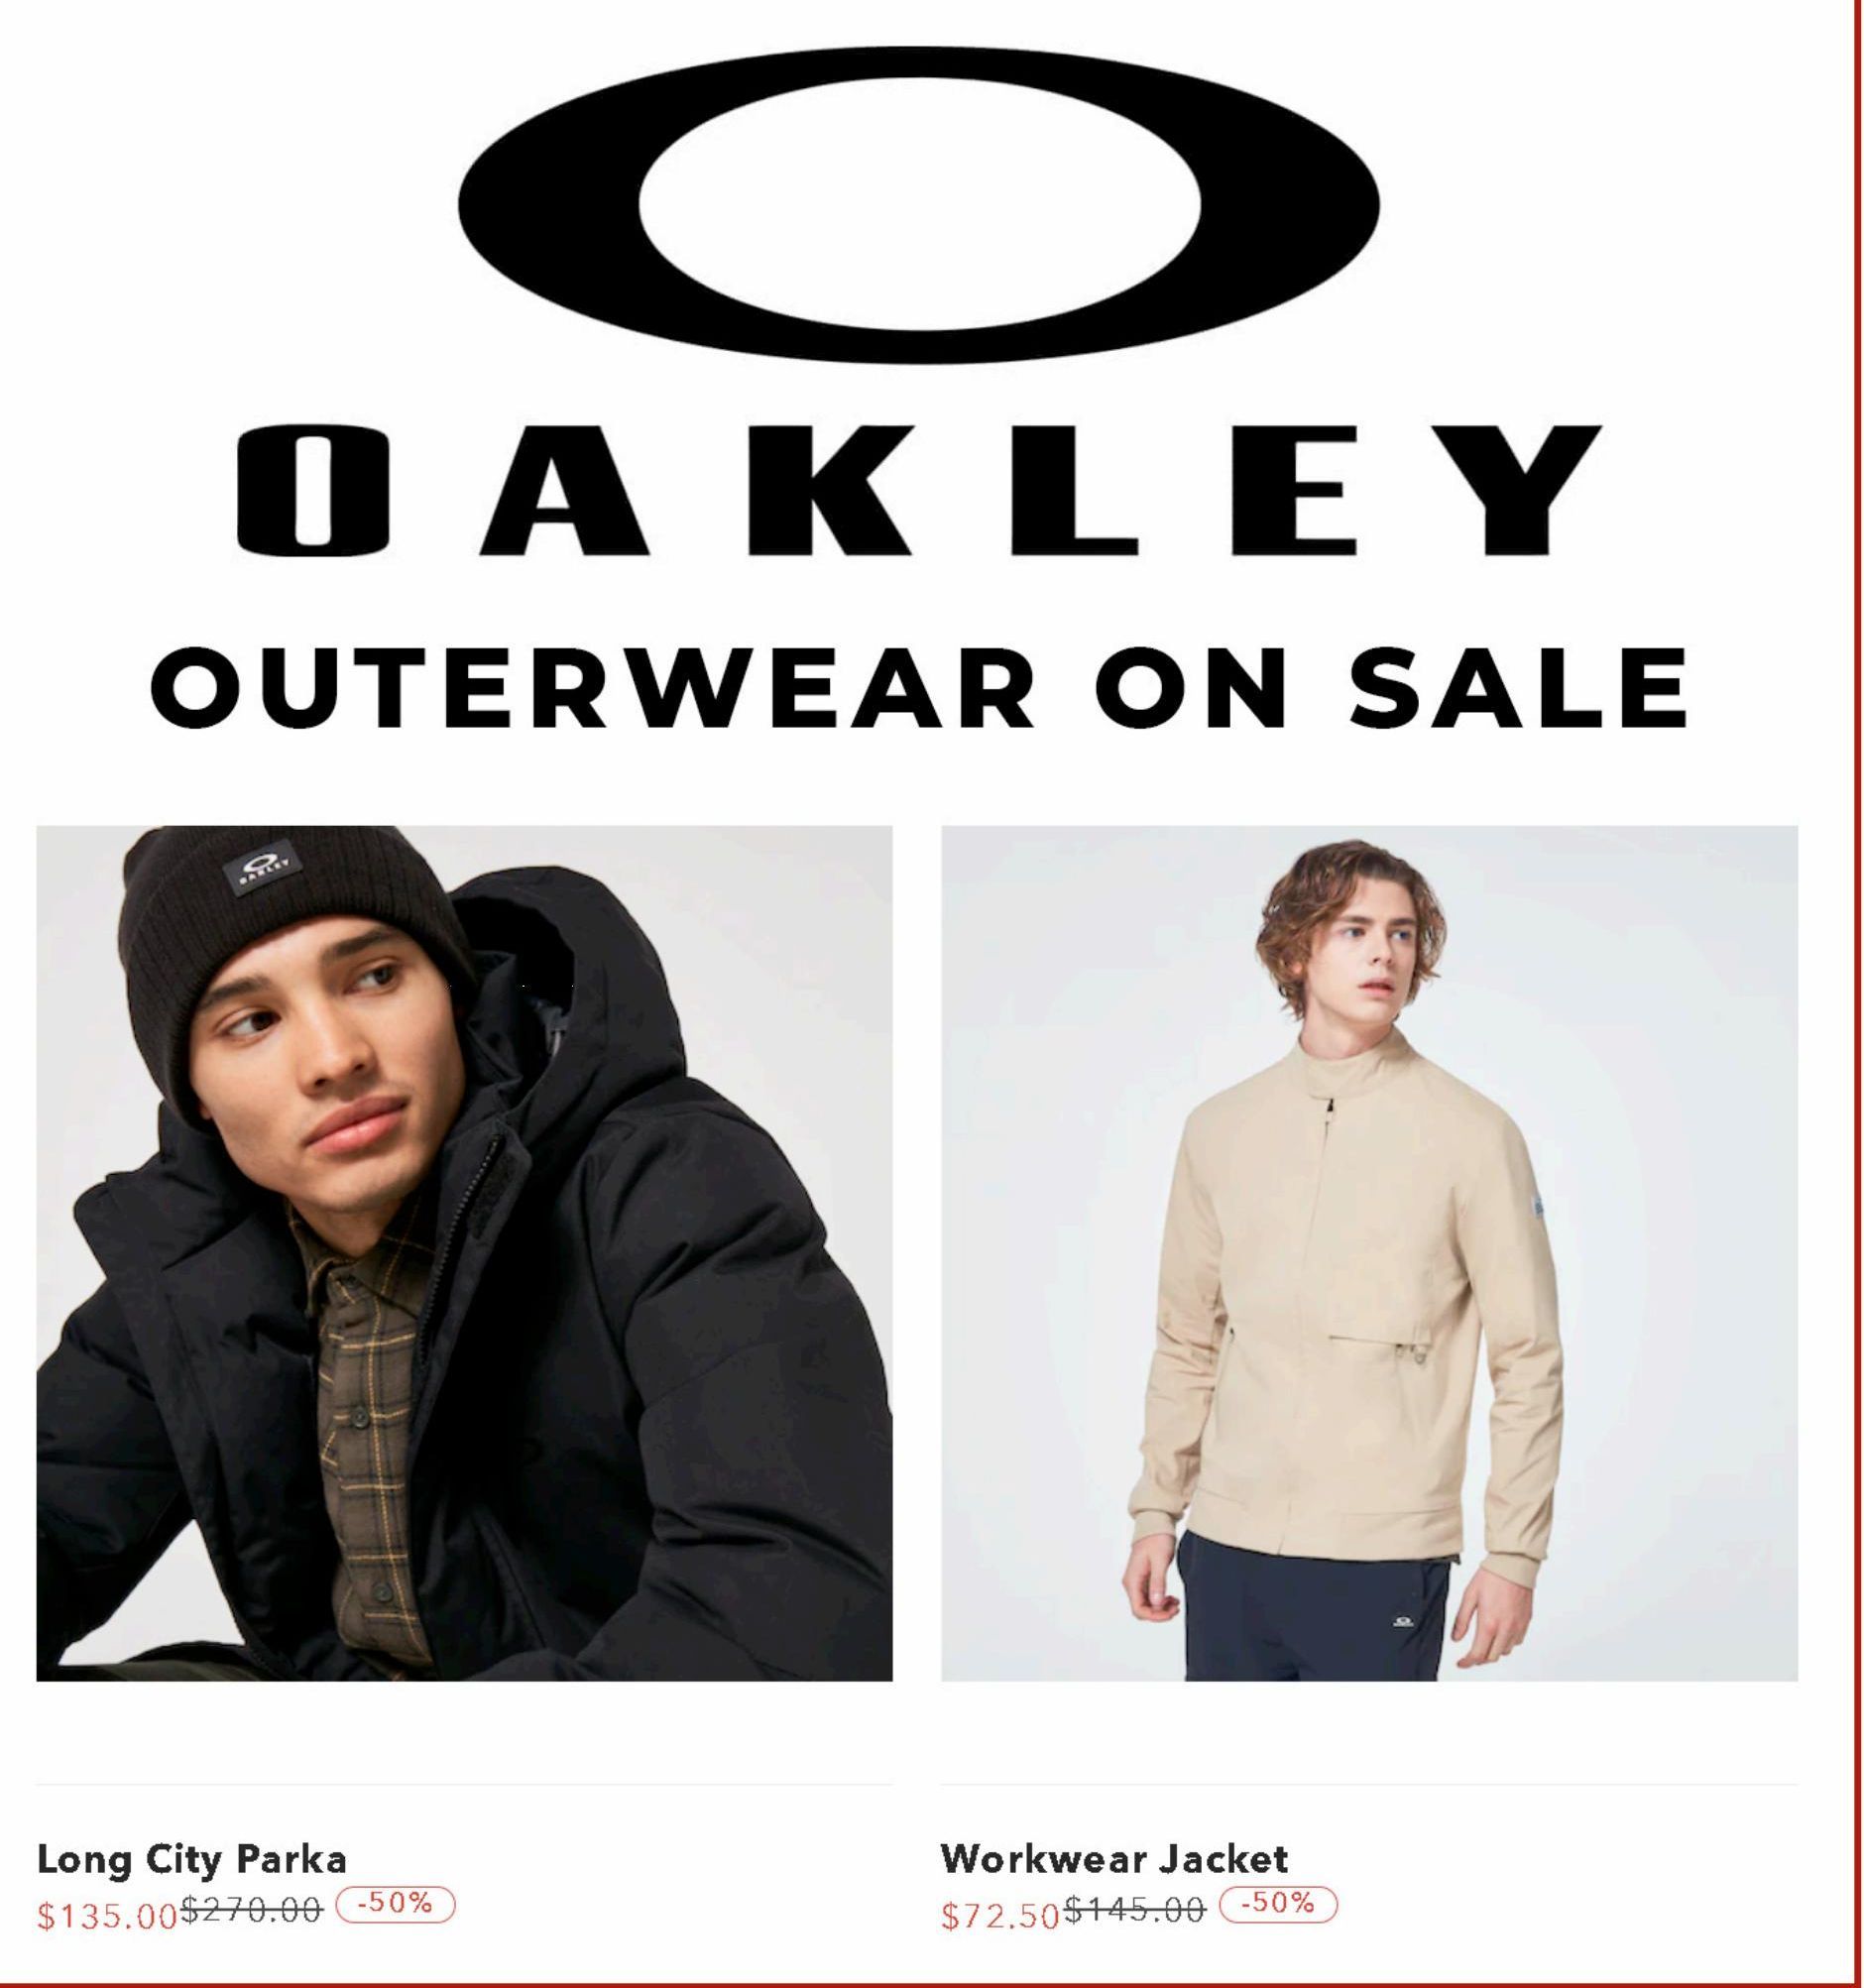 Season offers in Oakley